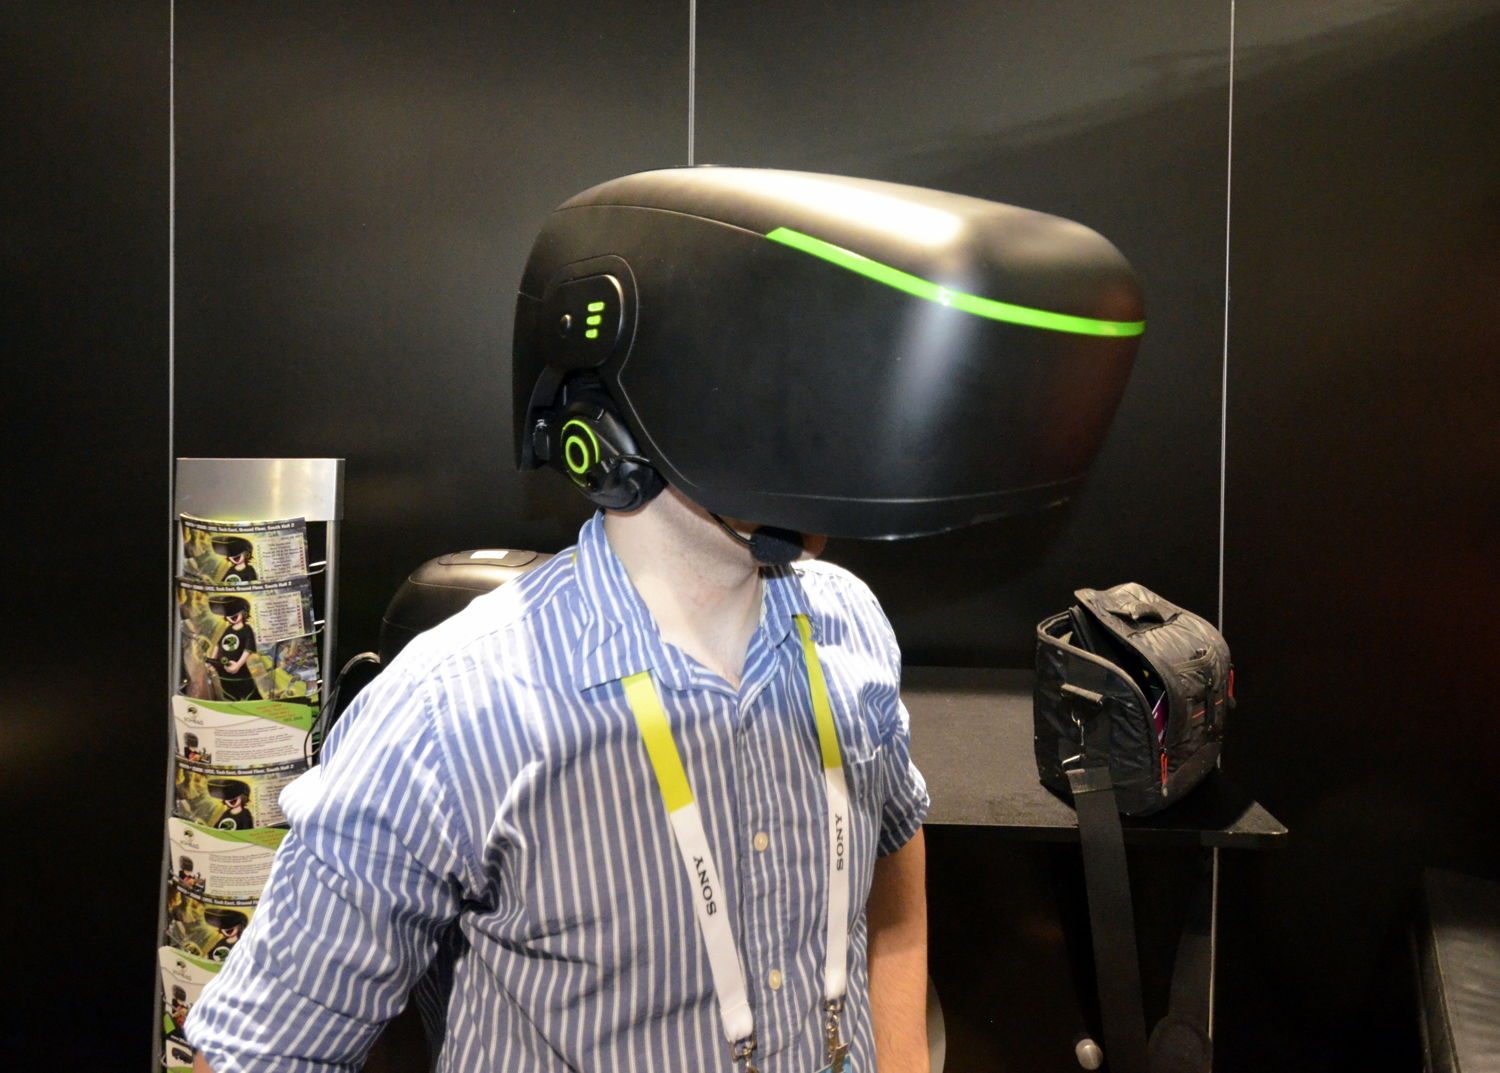 Vr класс. VR class hr11. Виртуальная реальность с полным погружением. Оборудование для погружения в виртуальную реальность. VR class оборудование.